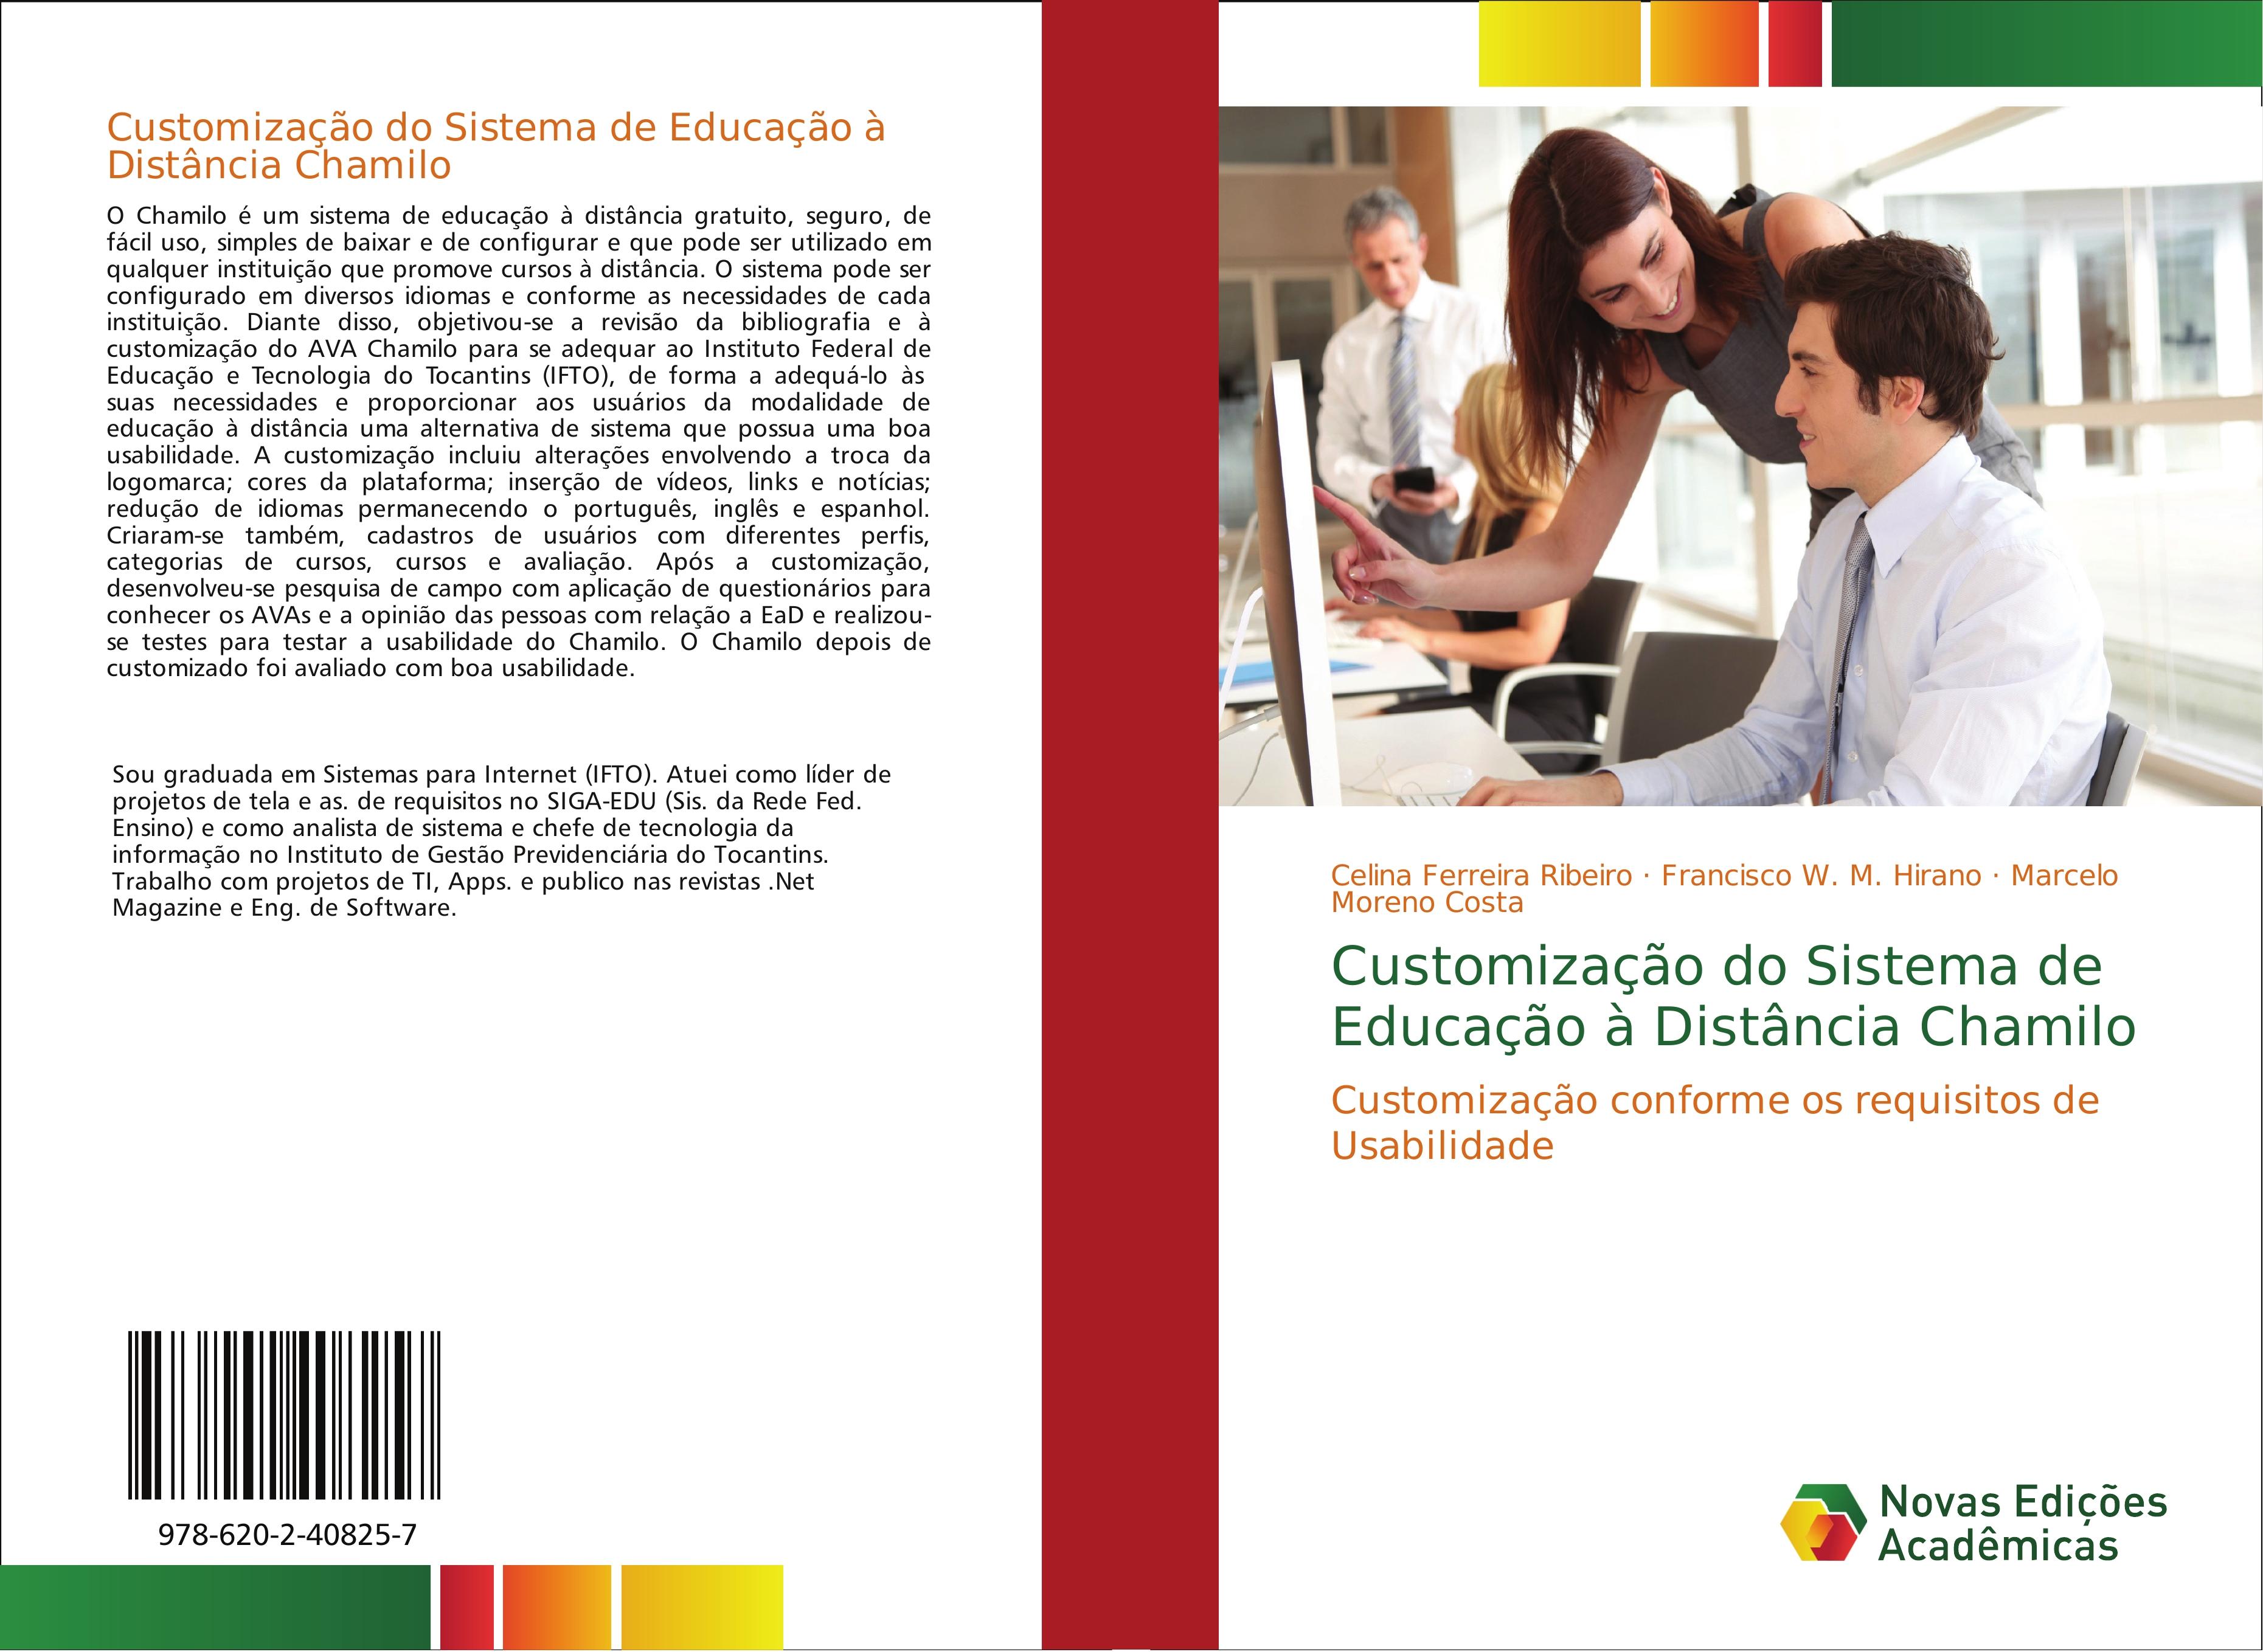 Customização do Sistema de Educação à Distância Chamilo - Celina Ferreira Ribeiro Francisco W. M. Hirano Marcelo Moreno Costa